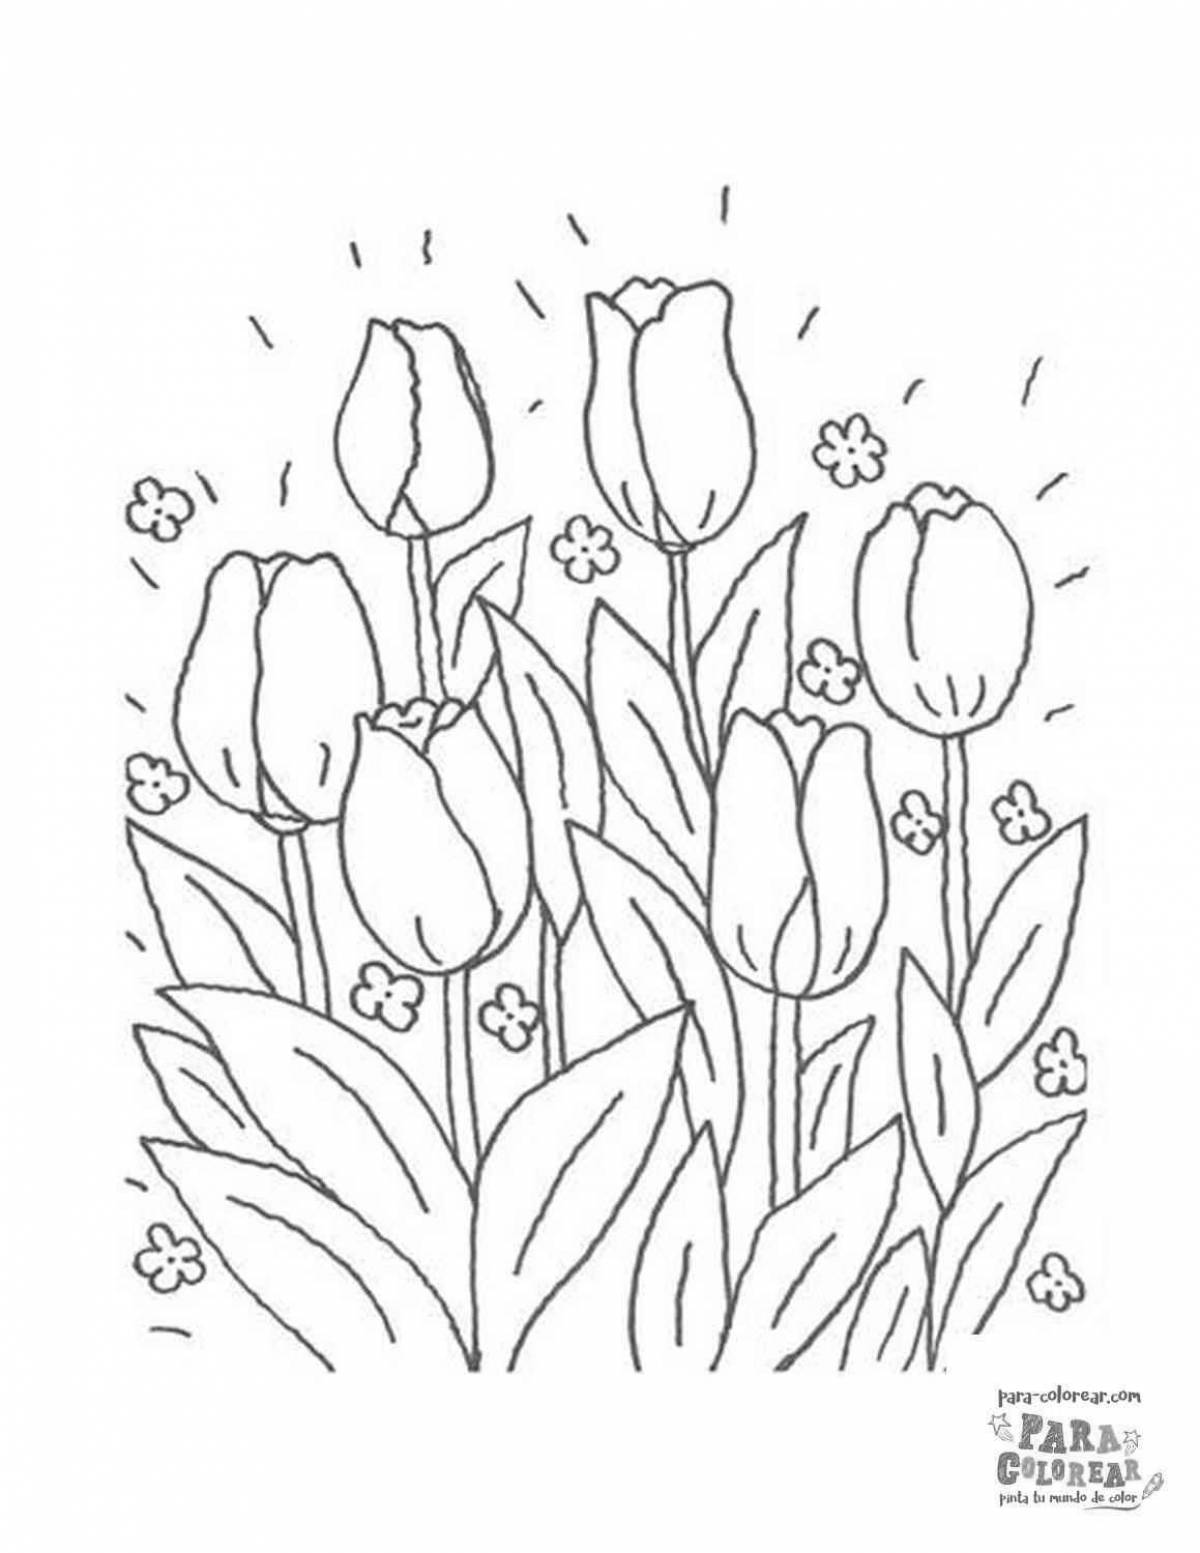 Веселые тюльпаны 8 марта раскраски